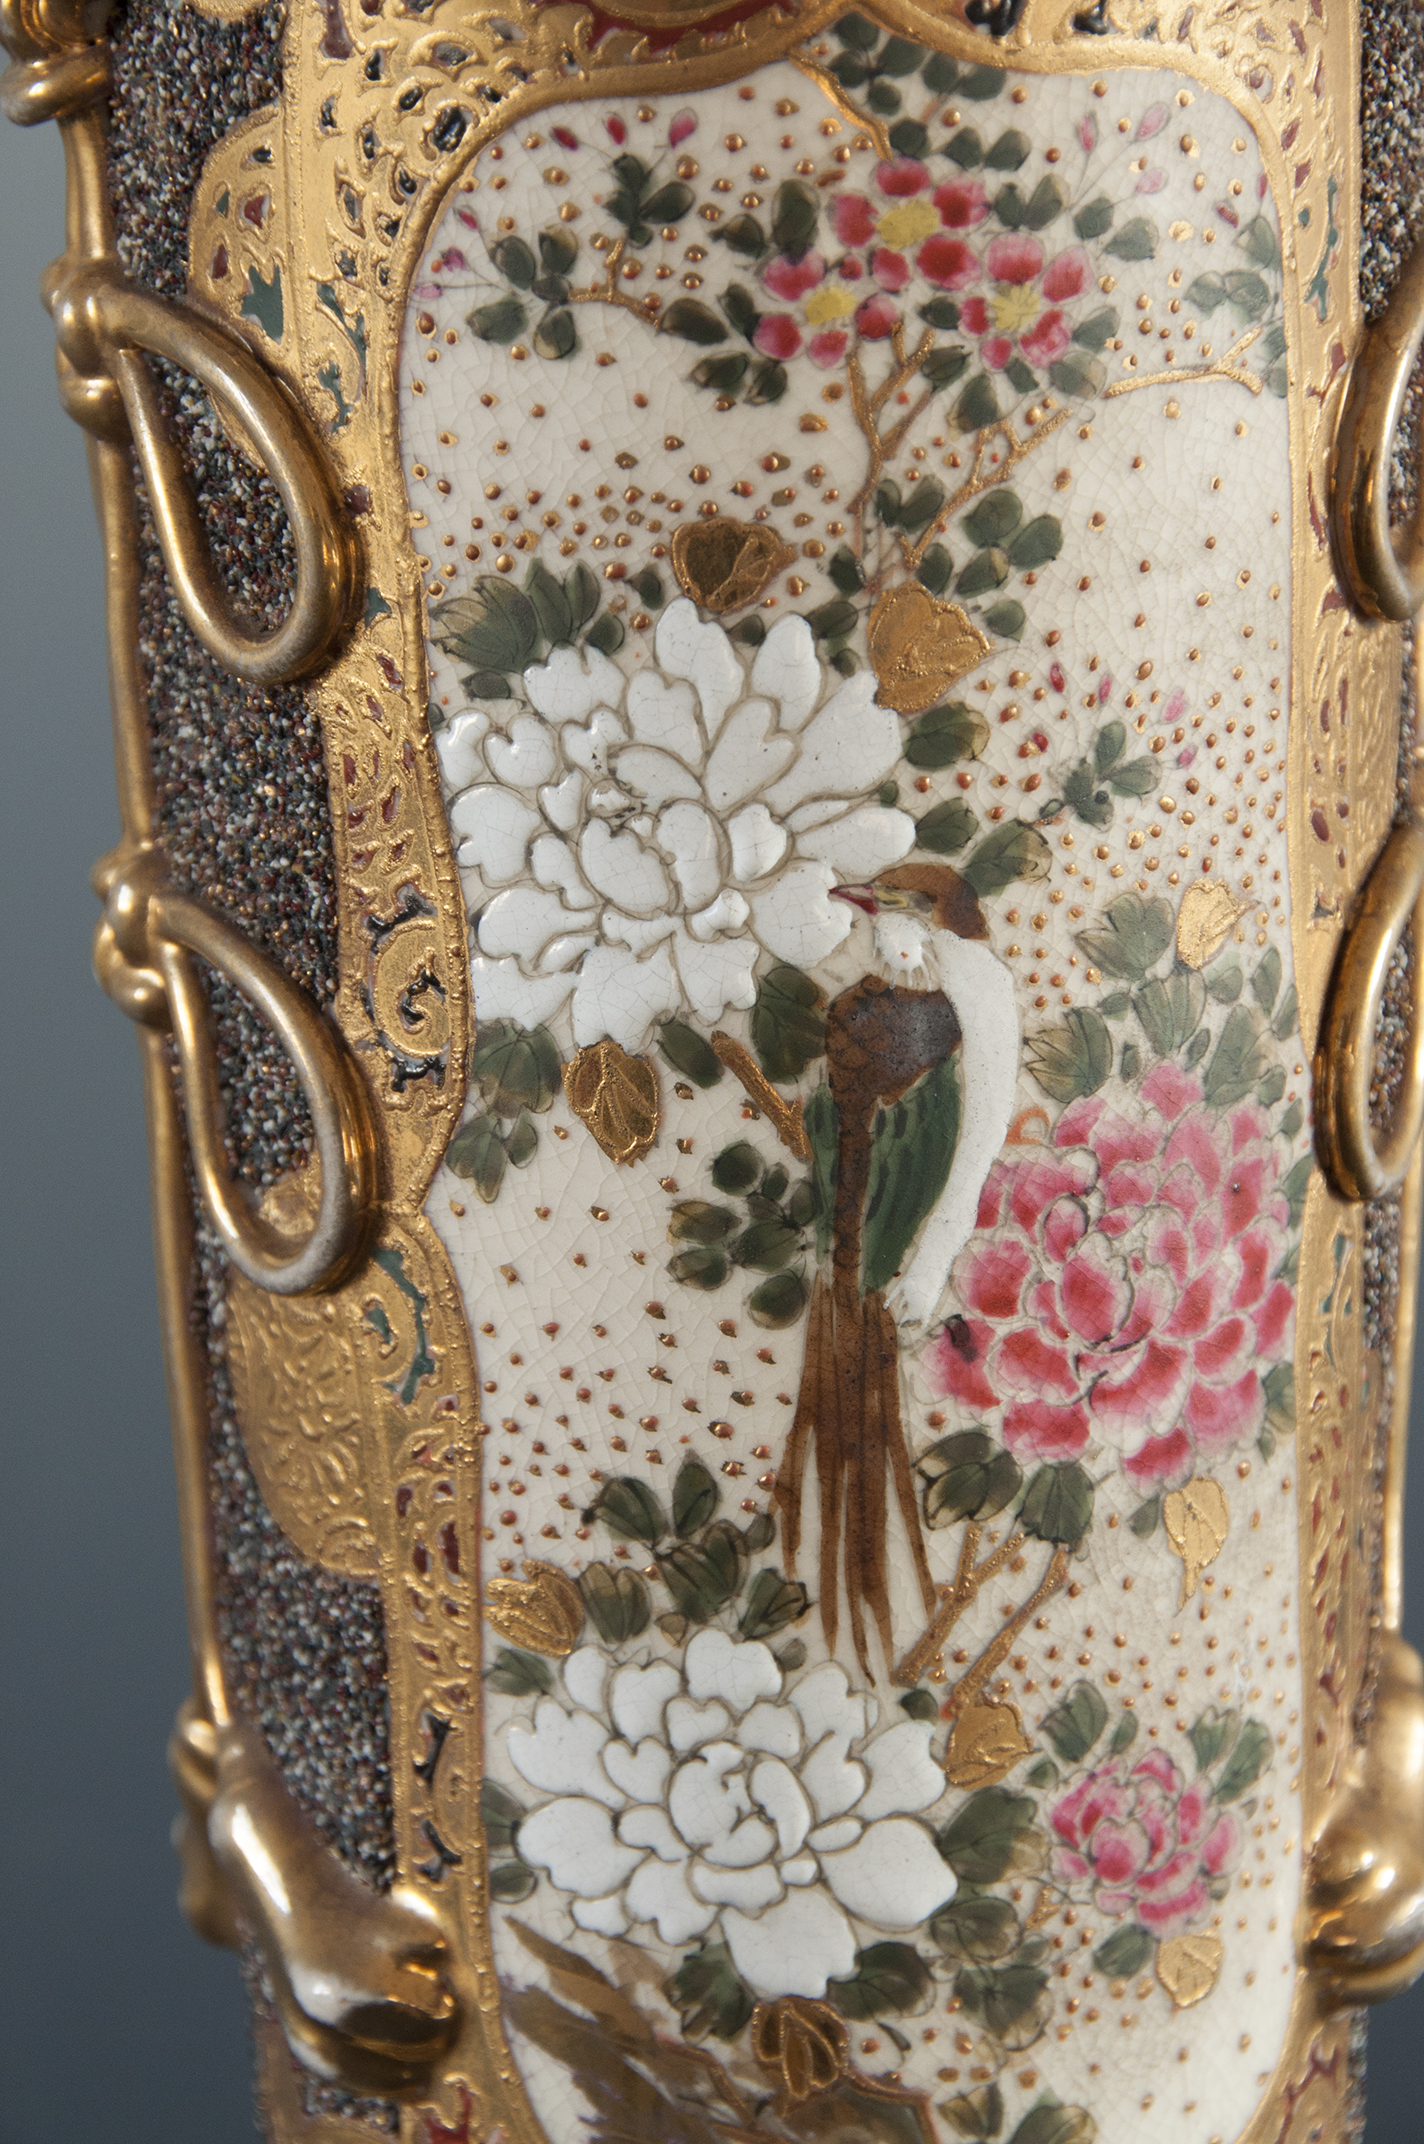 Na ceramicznym korpusie lampy naftowej bogato dekorowana złoceniami przestrzeń, w złotym ornamencie wydzielone pole wpisana dekoracja z kwiatami wiśni i piwonii oraz sroką.